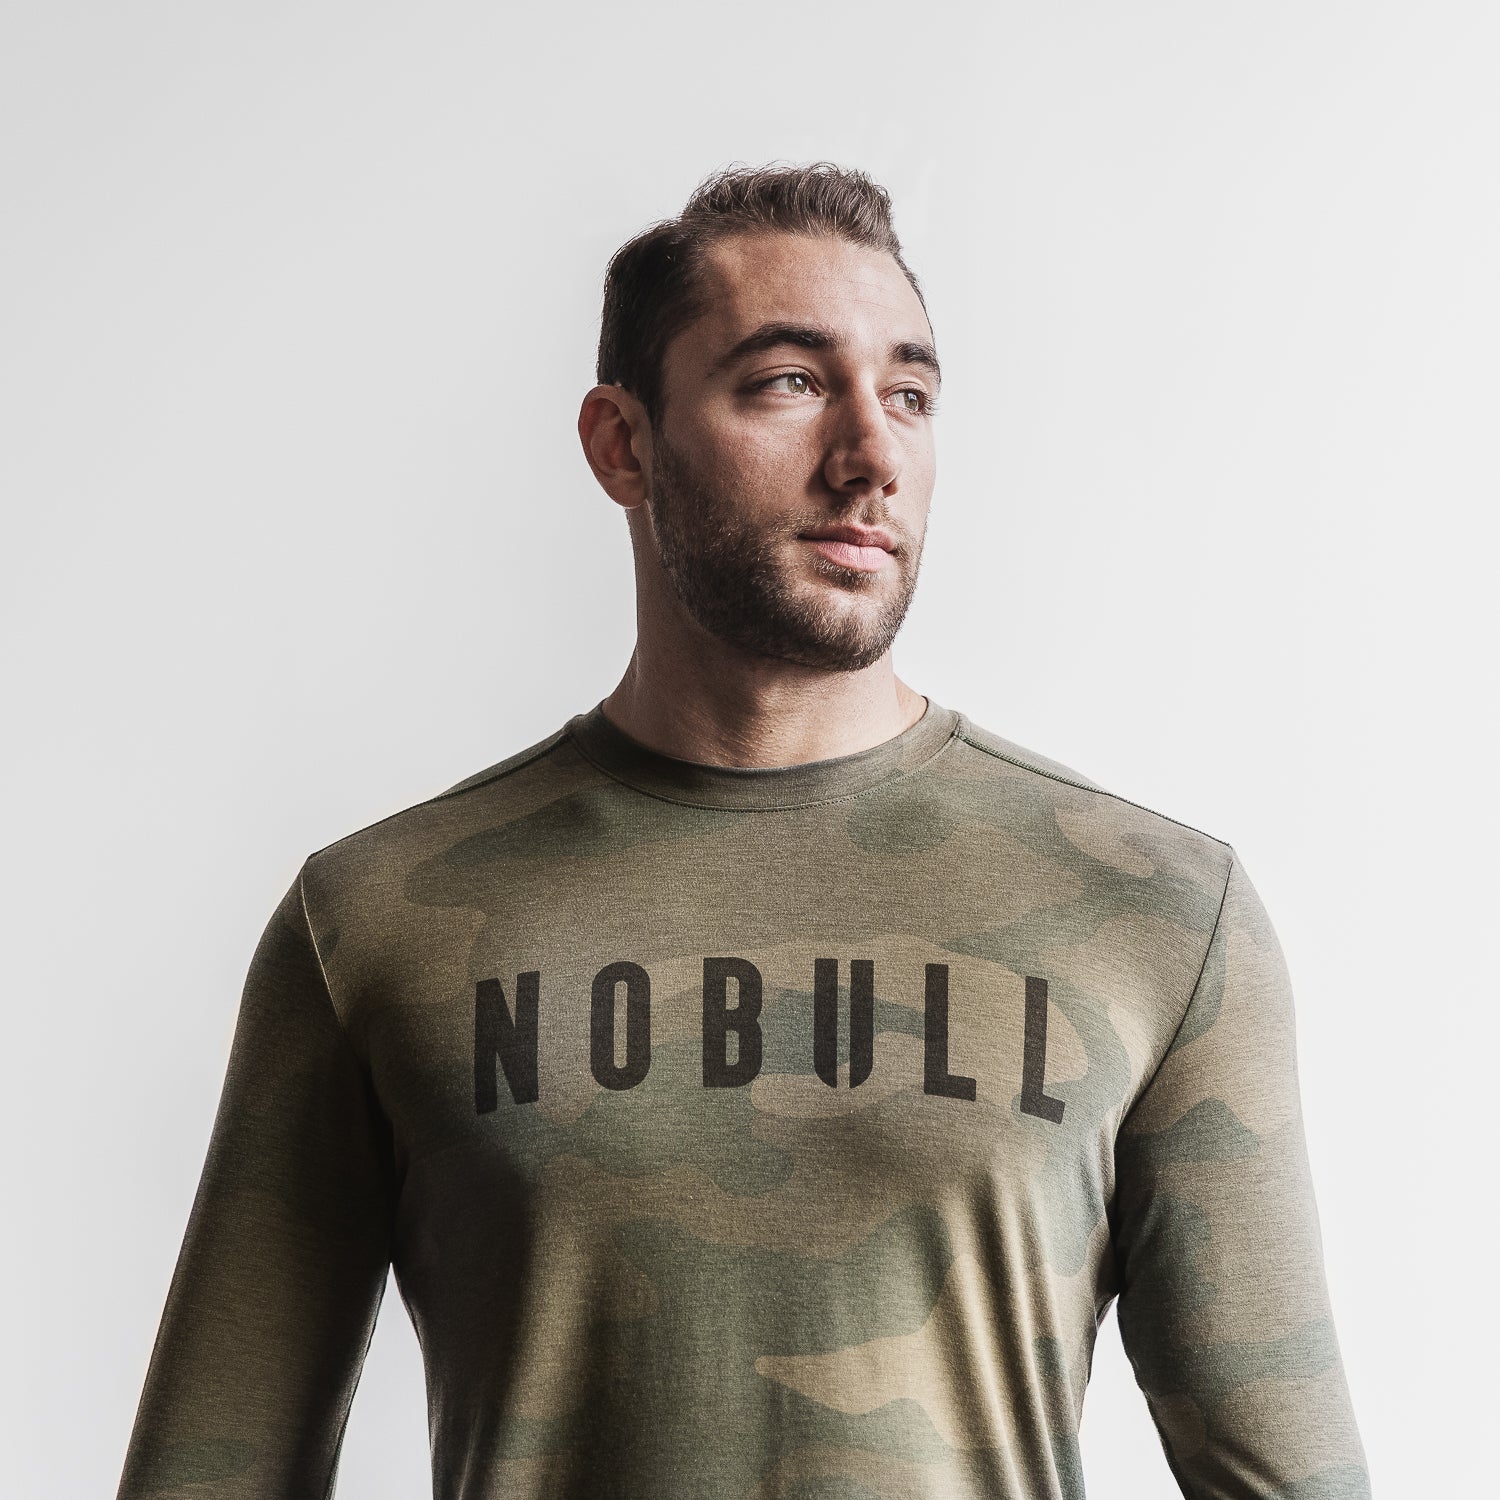 NOBULL - Men's Camo Long Sleeve Tee - Army Green Camo - Size XL